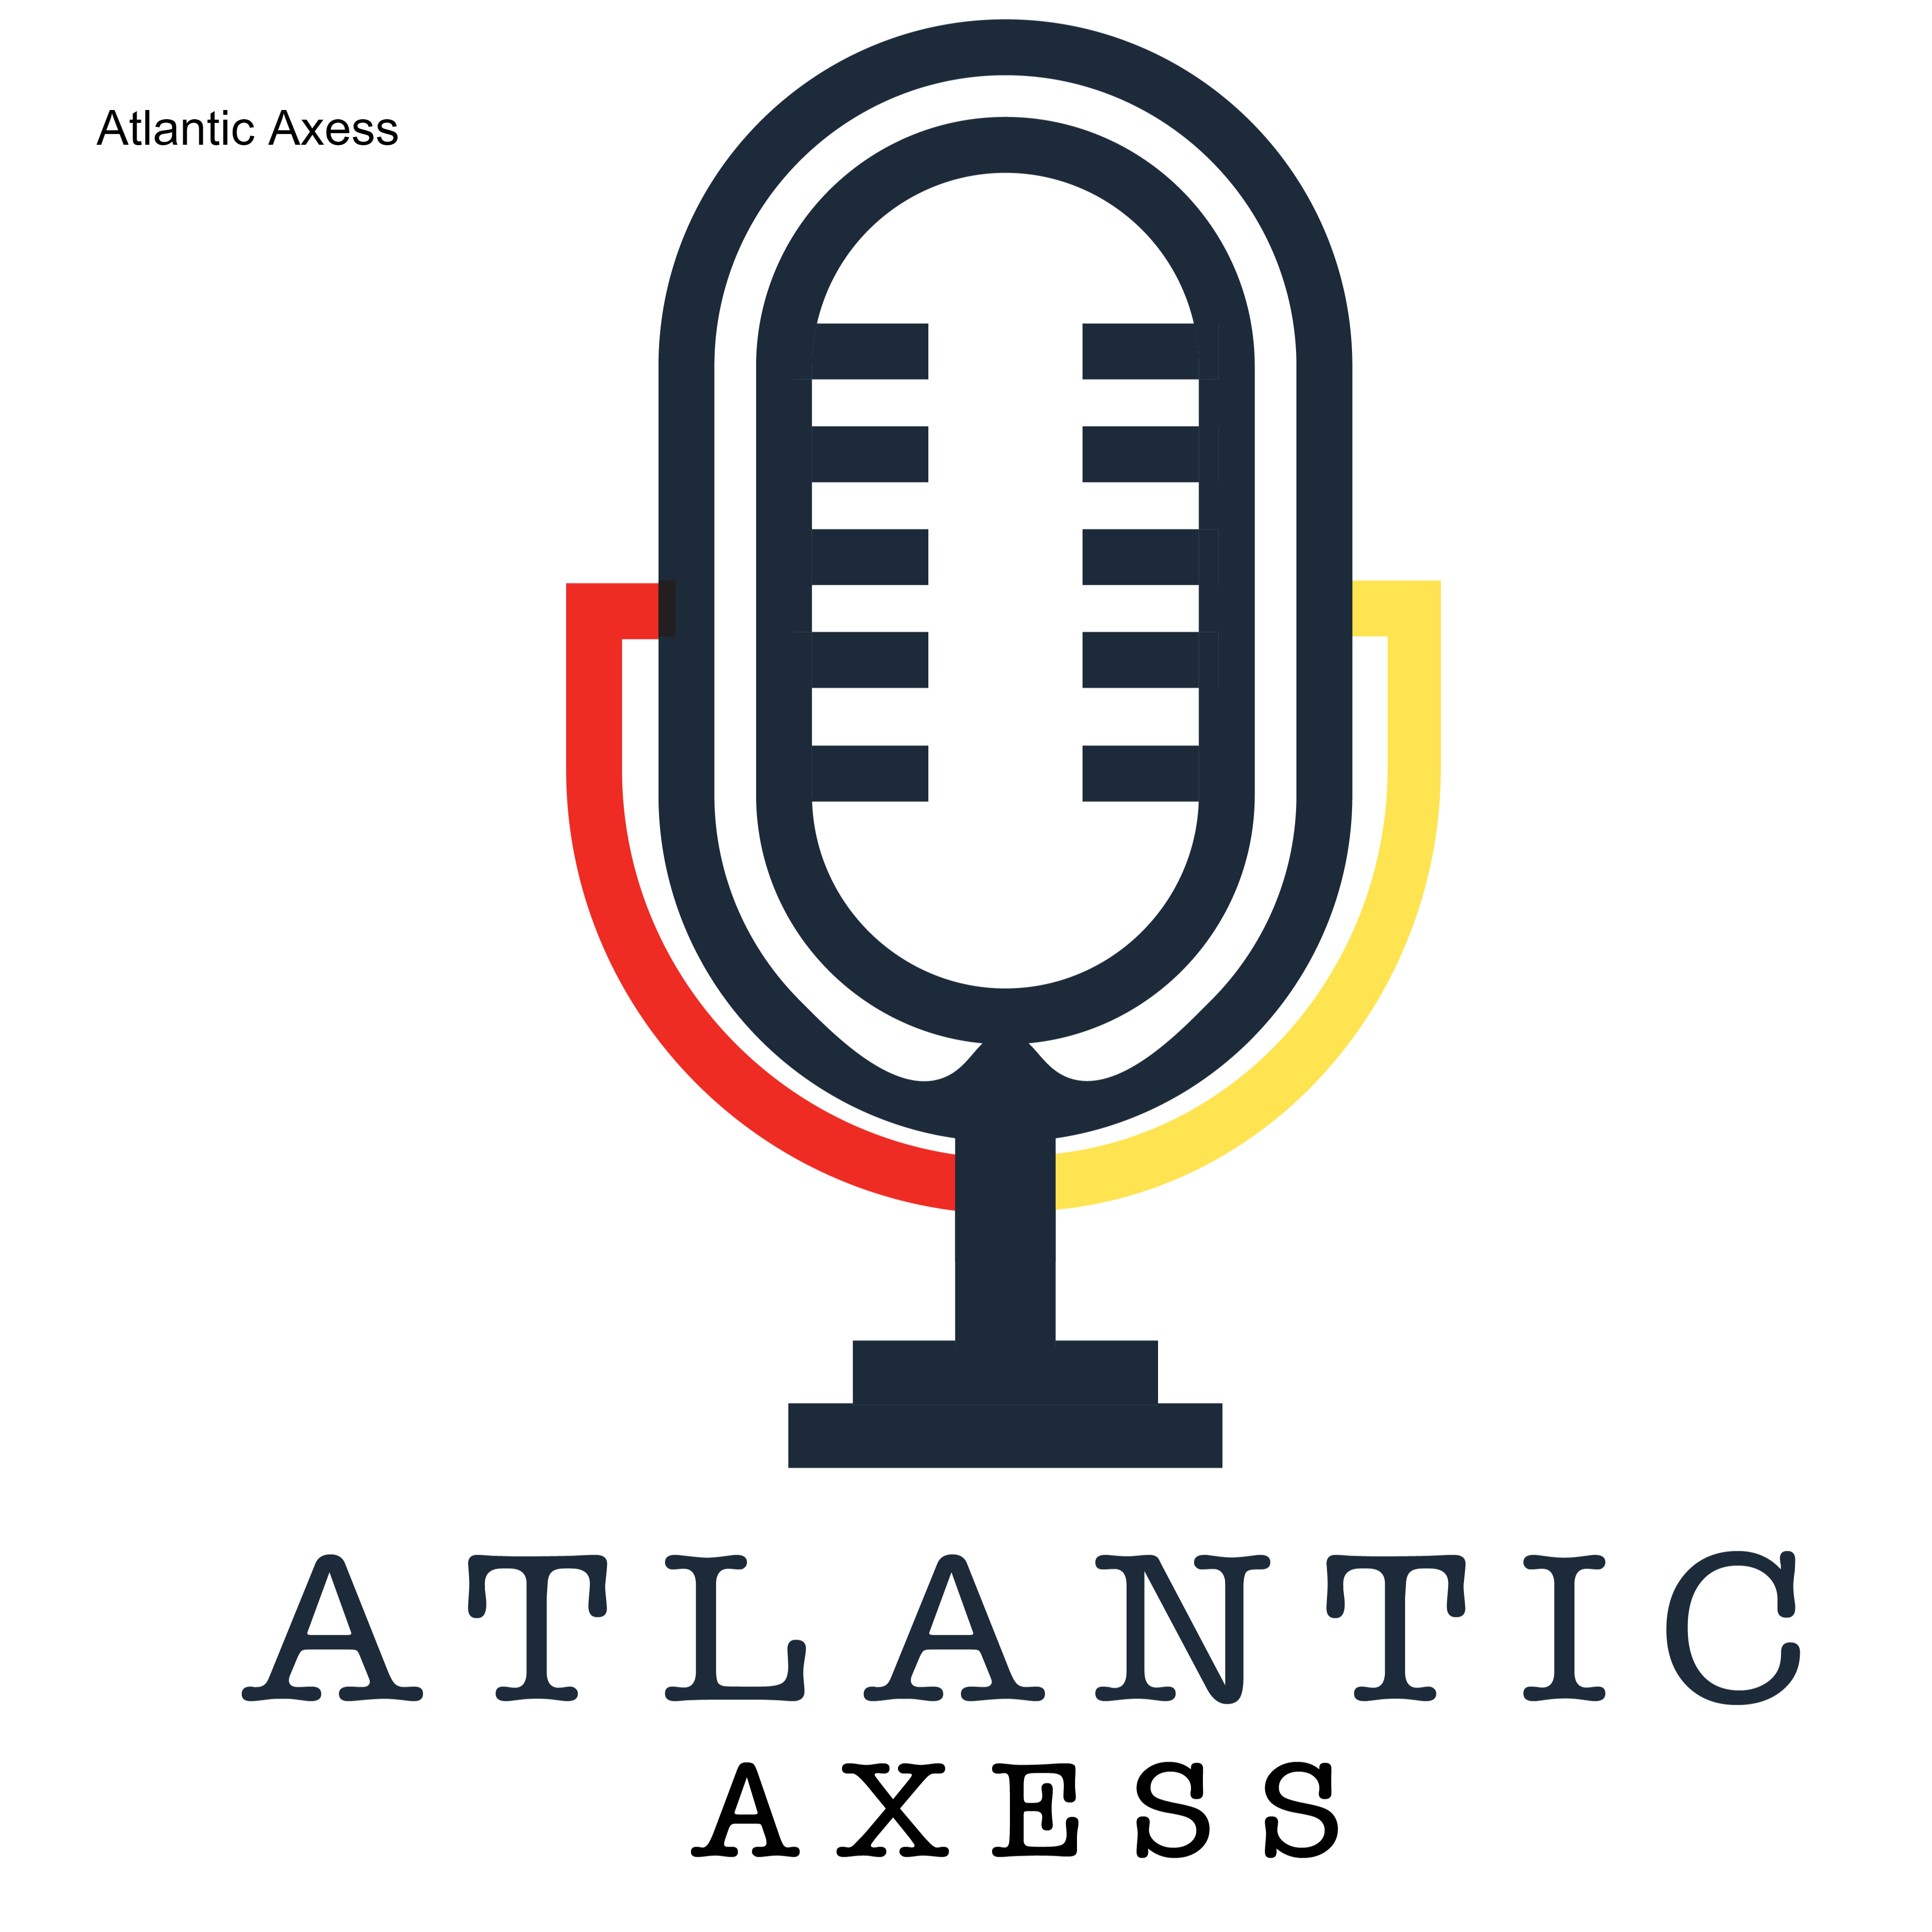 Atlantic Axess